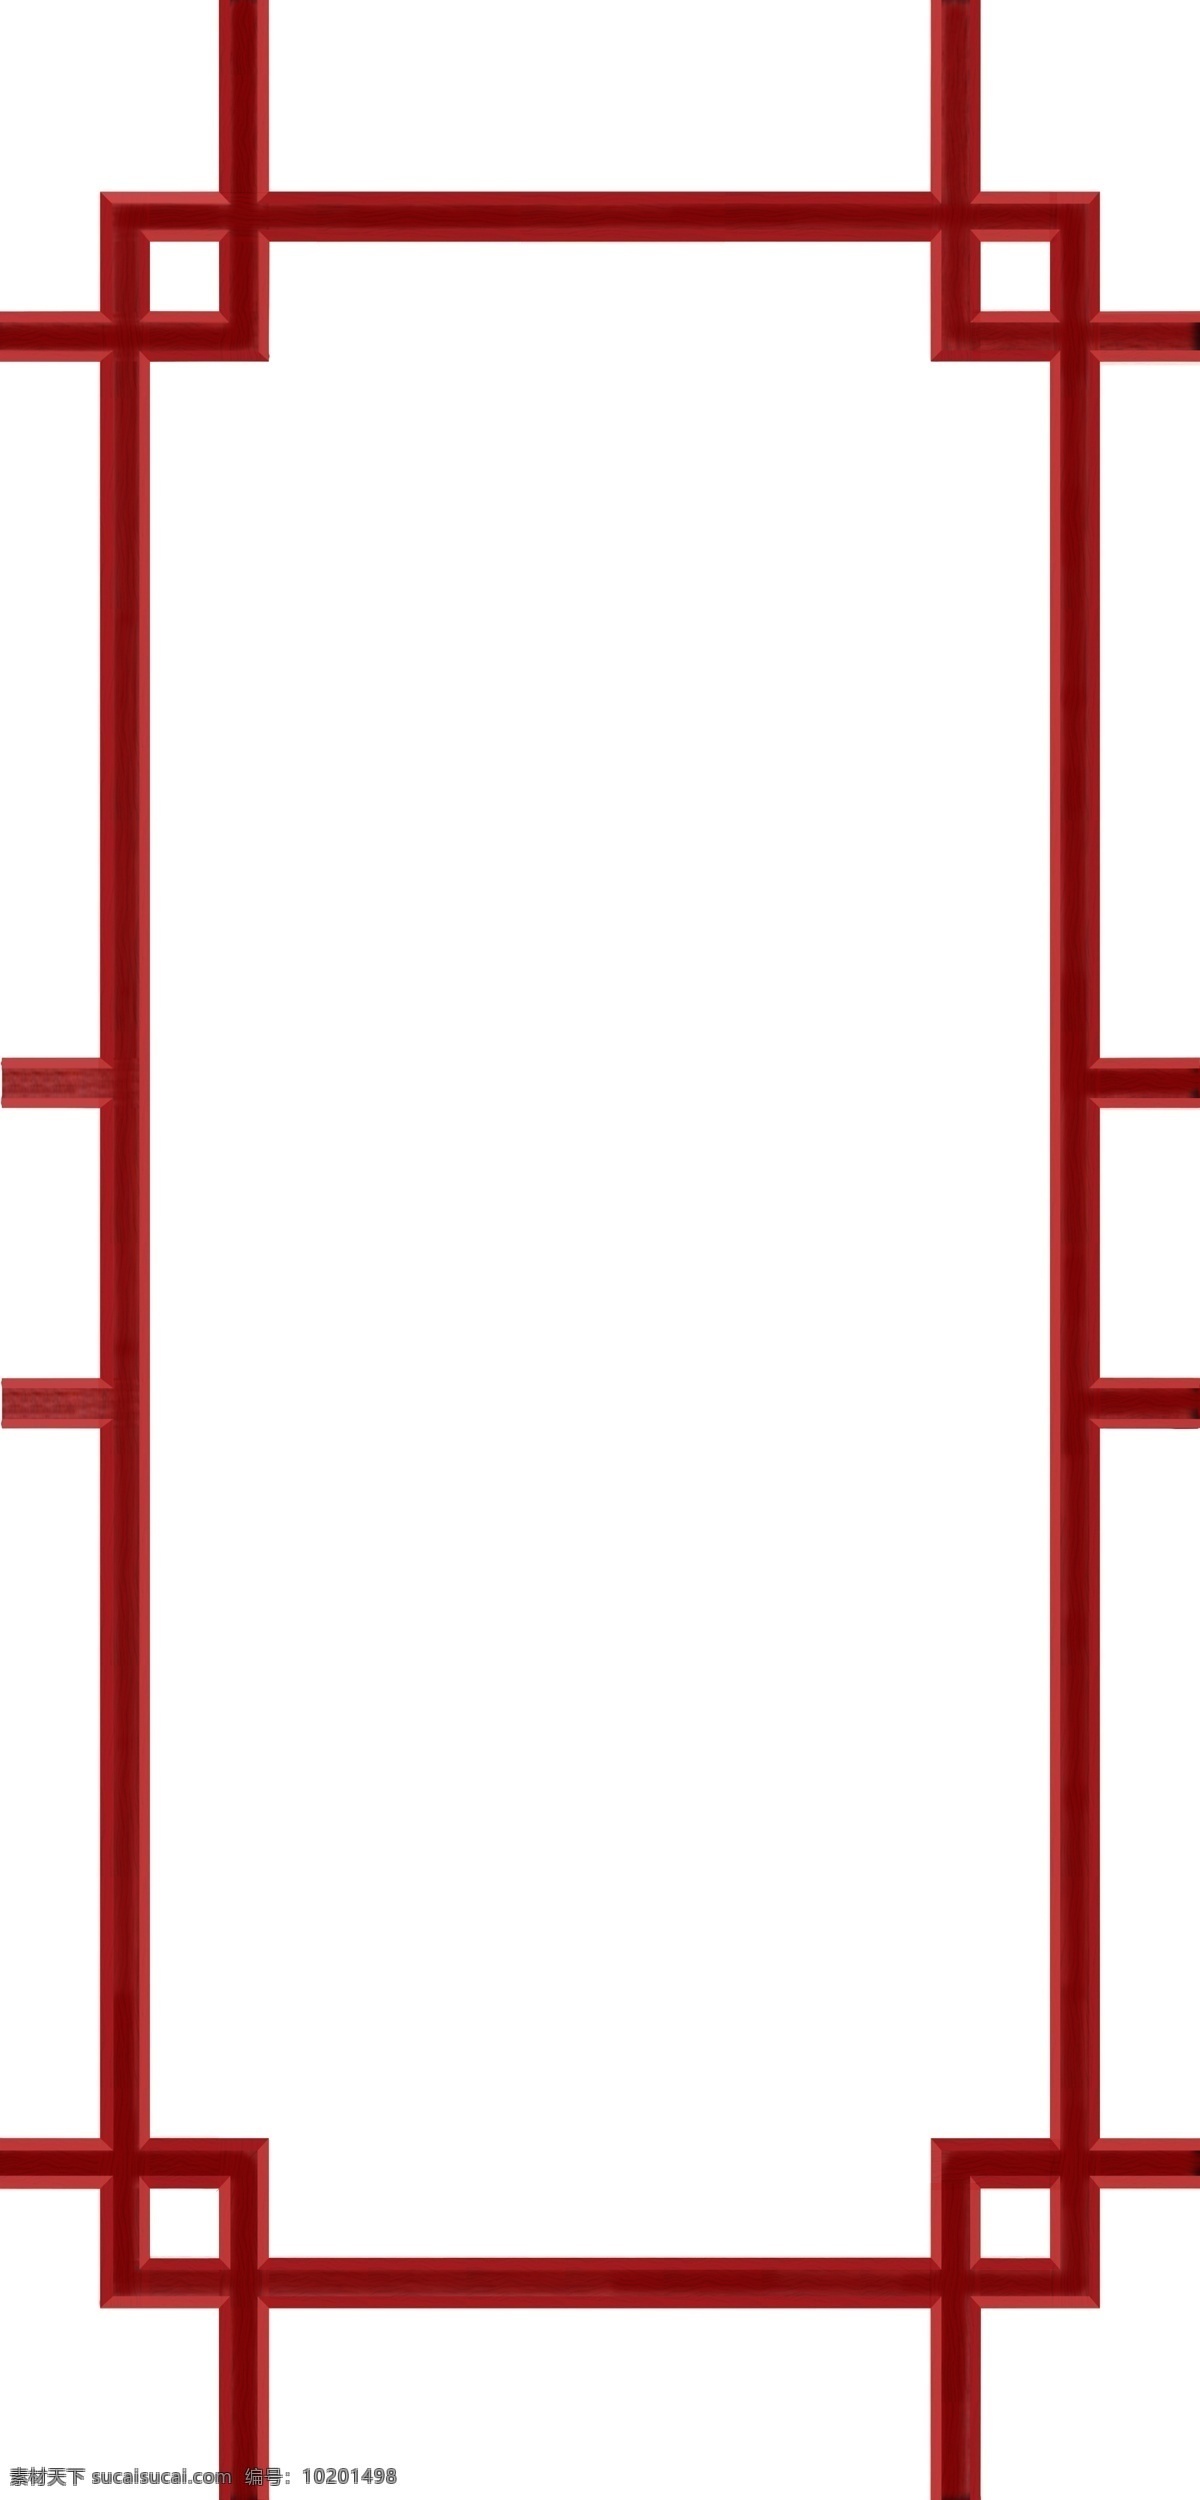 仿红木门框 木纹 门框 纹理 红木 门窗图案 环境设计 室内设计